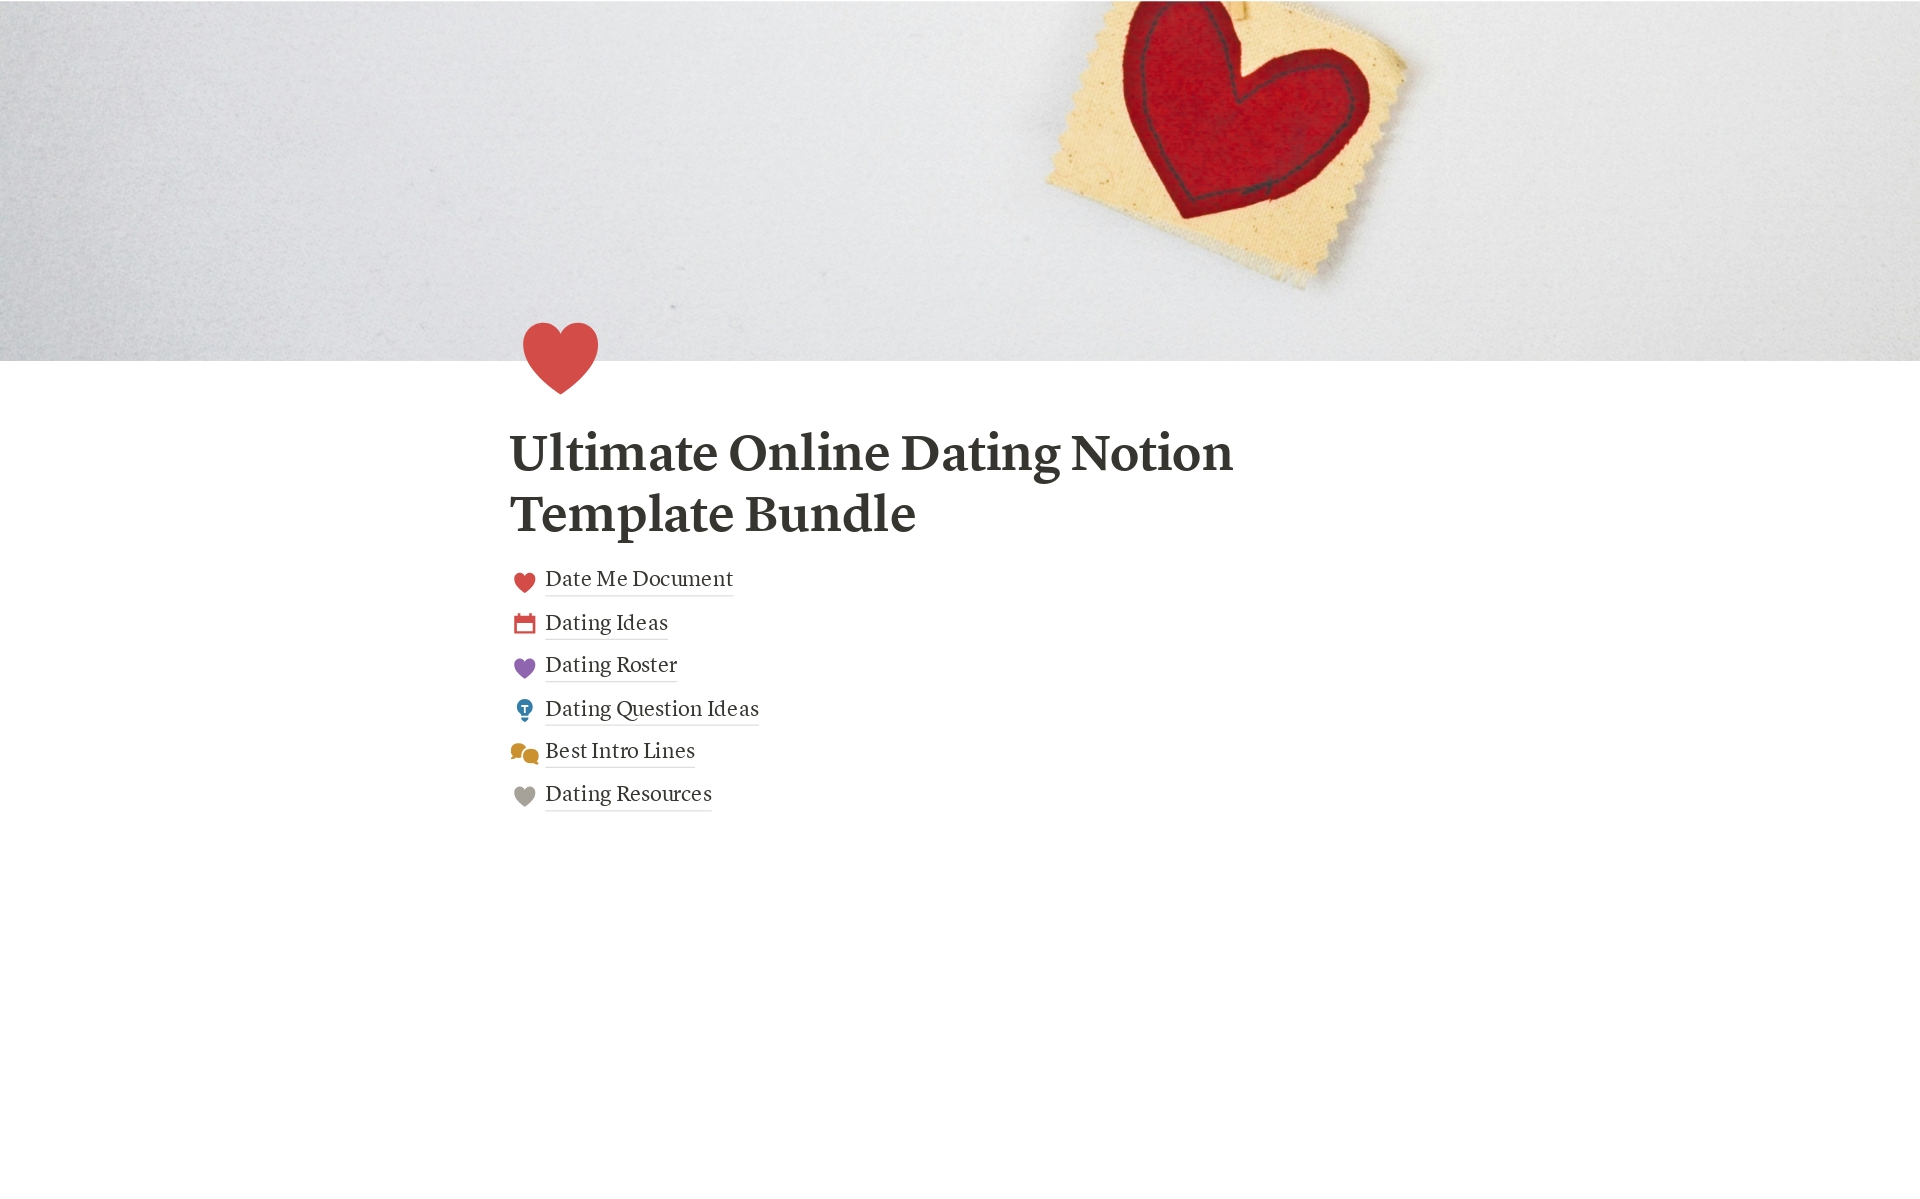 Vista previa de plantilla para Ultimate Online Dating 